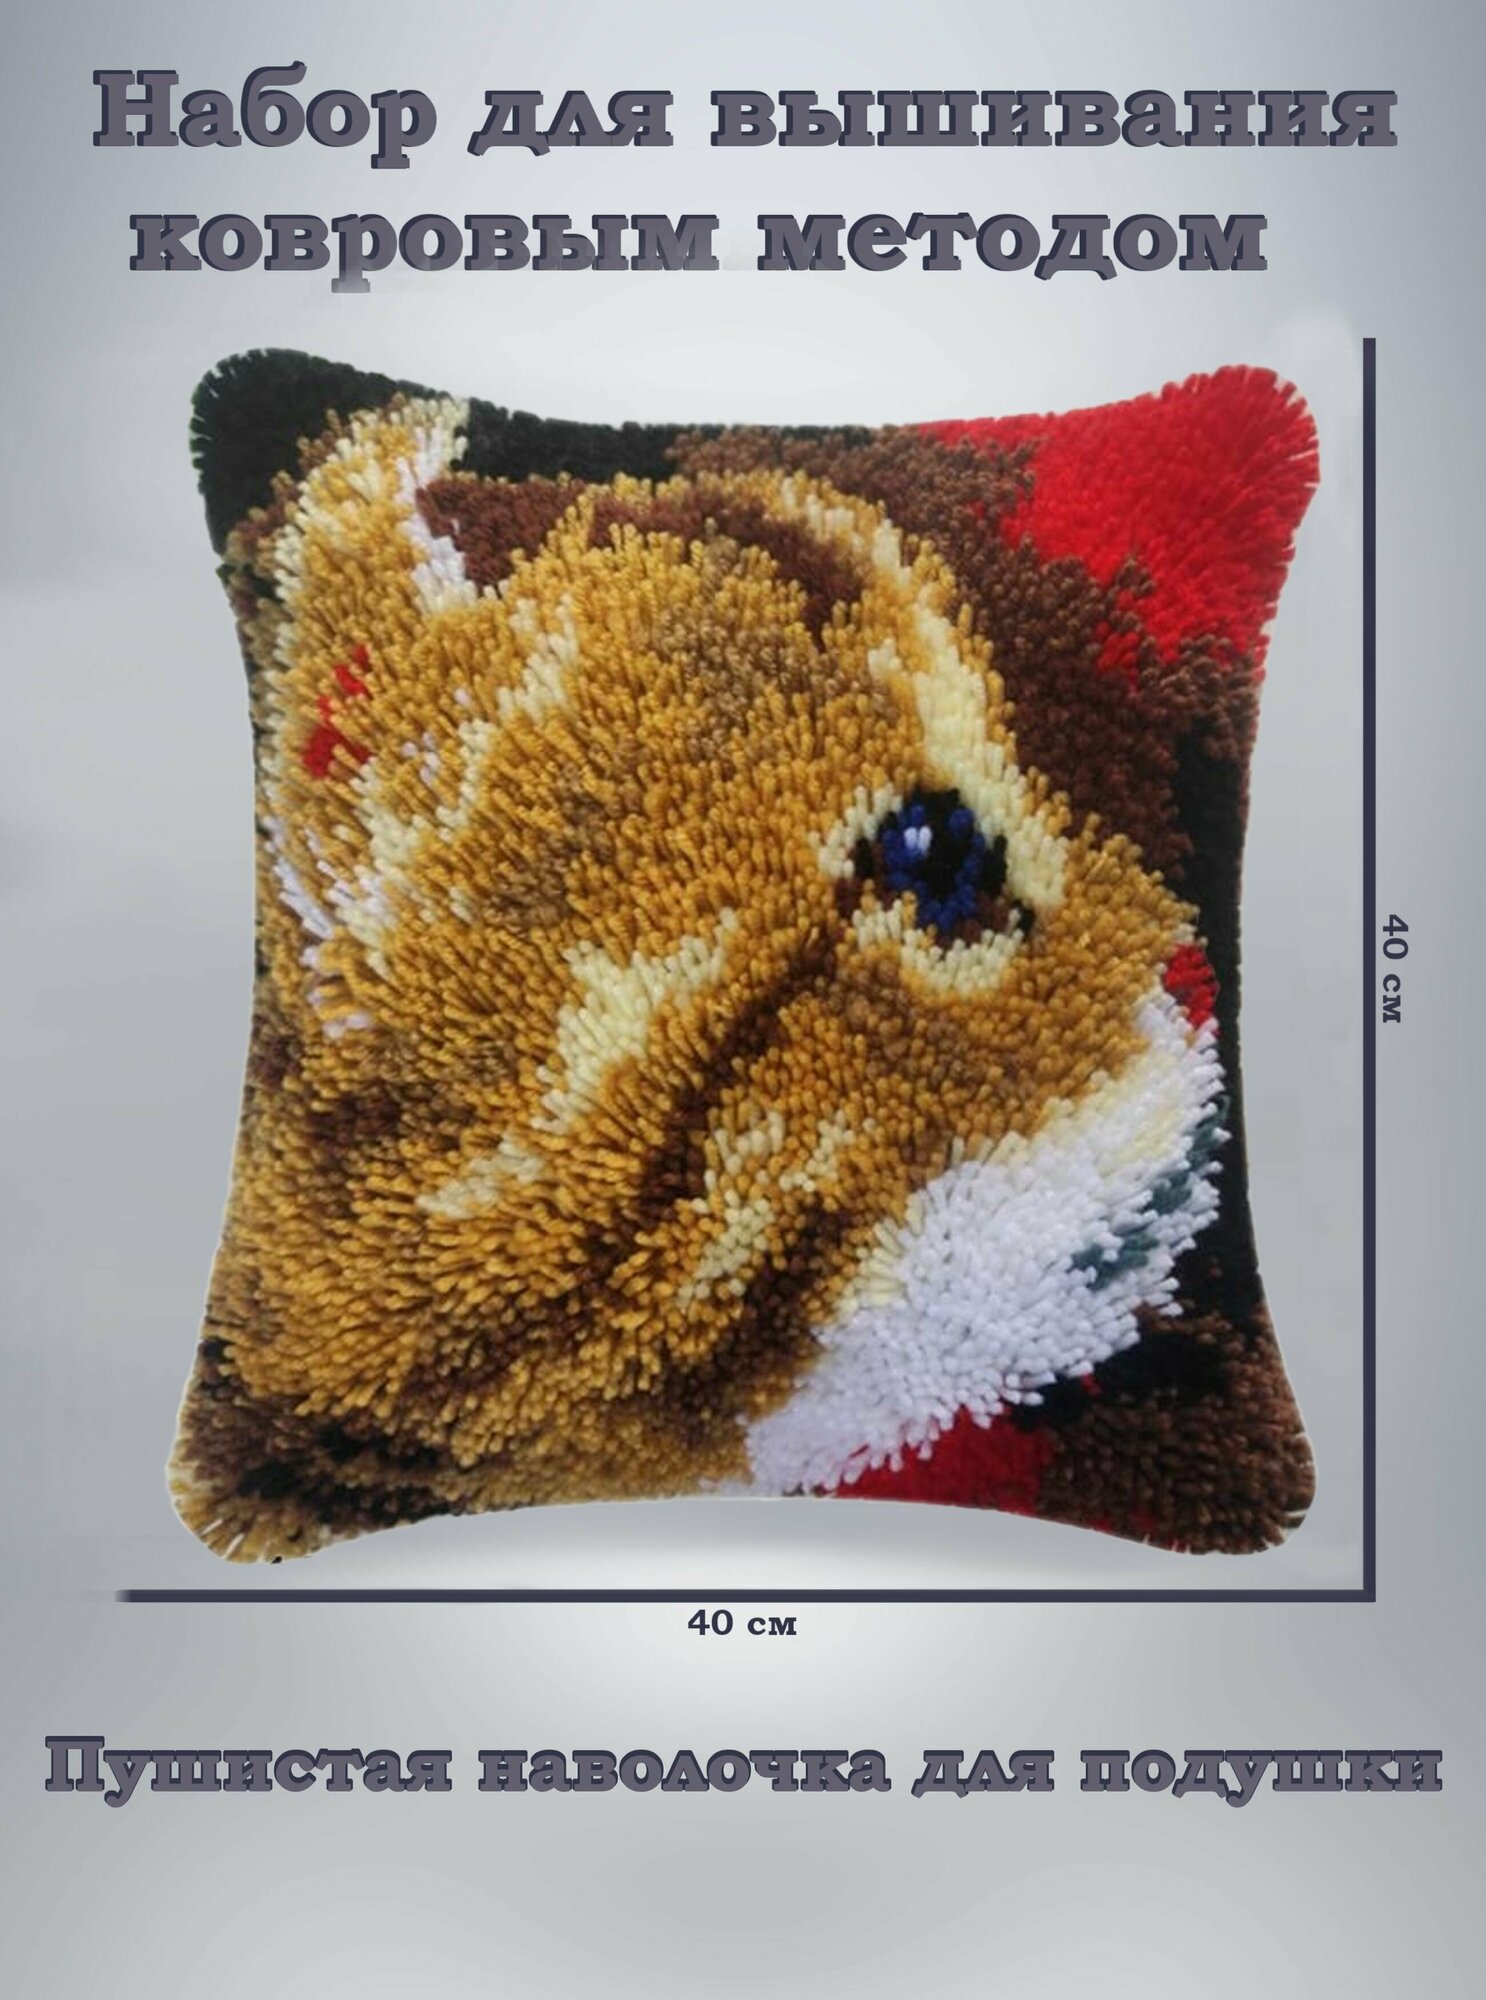 Набор для вышивания подушка ковровым методом котик